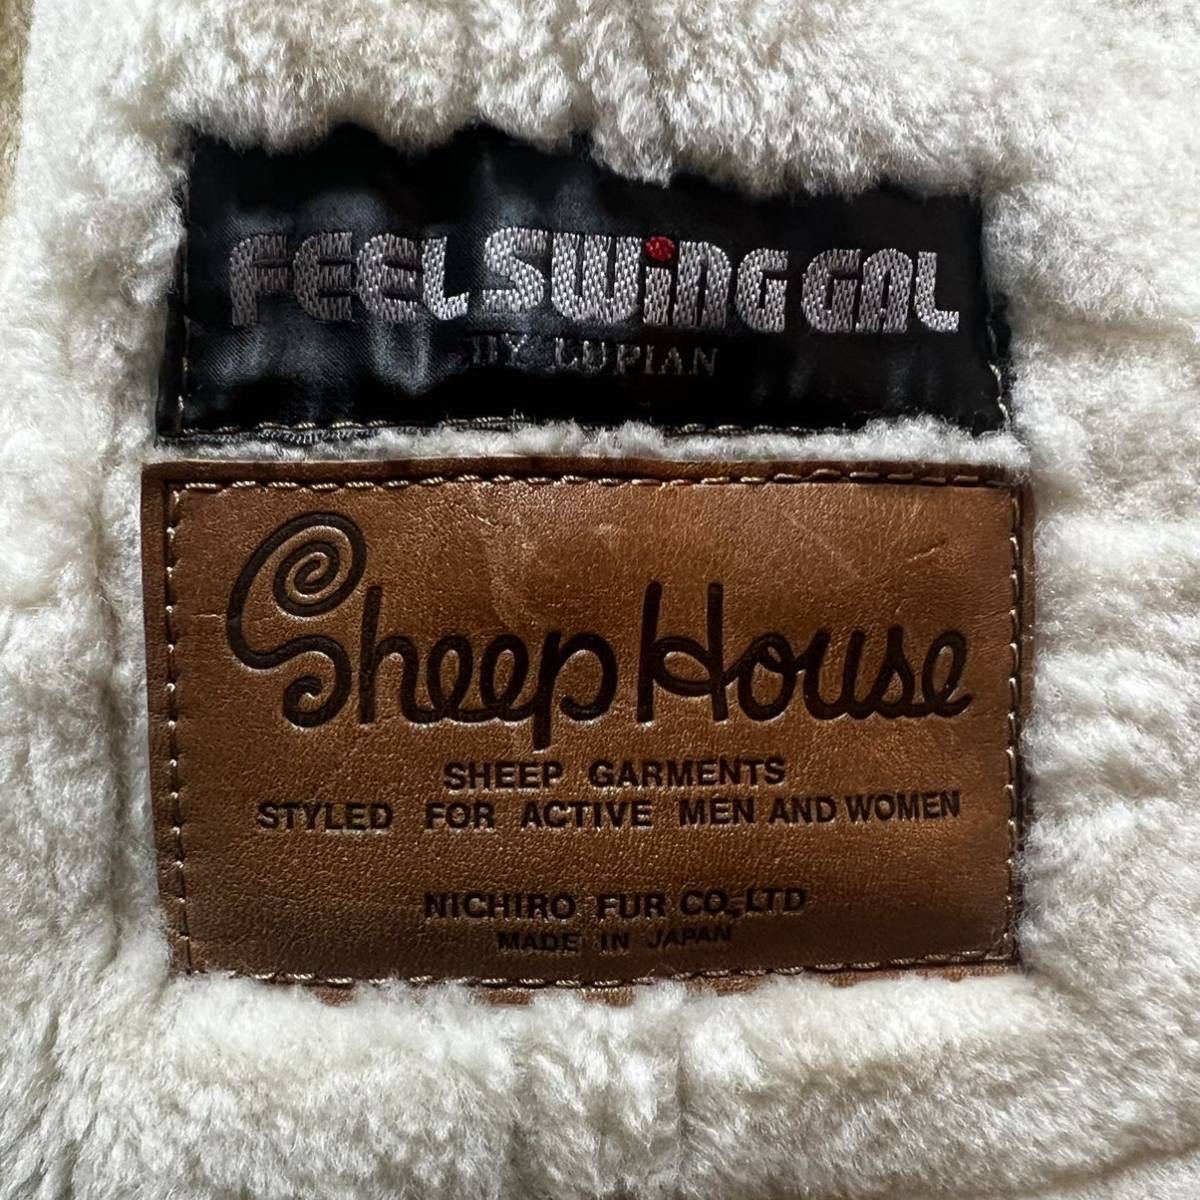  prompt decision *NICHIRO FOR CO LTD* beautiful goods high class nichiro fur mouton mouton coat L XL rank made in Japan FEEL SWING GAL LUPIAN duffle coat men's 